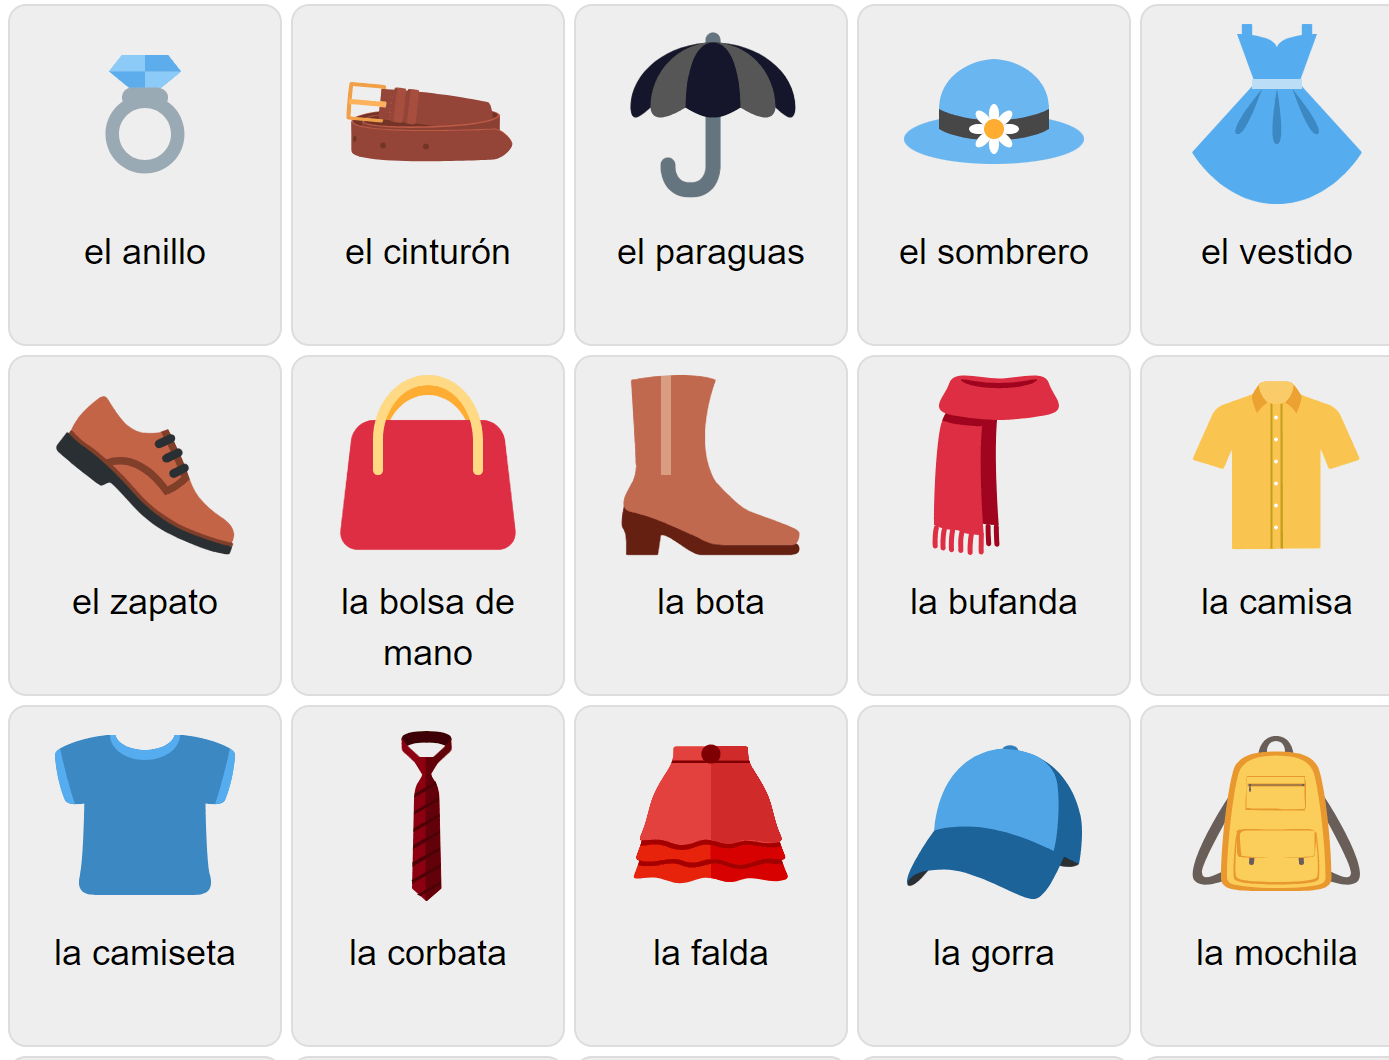 Kläder på spanska